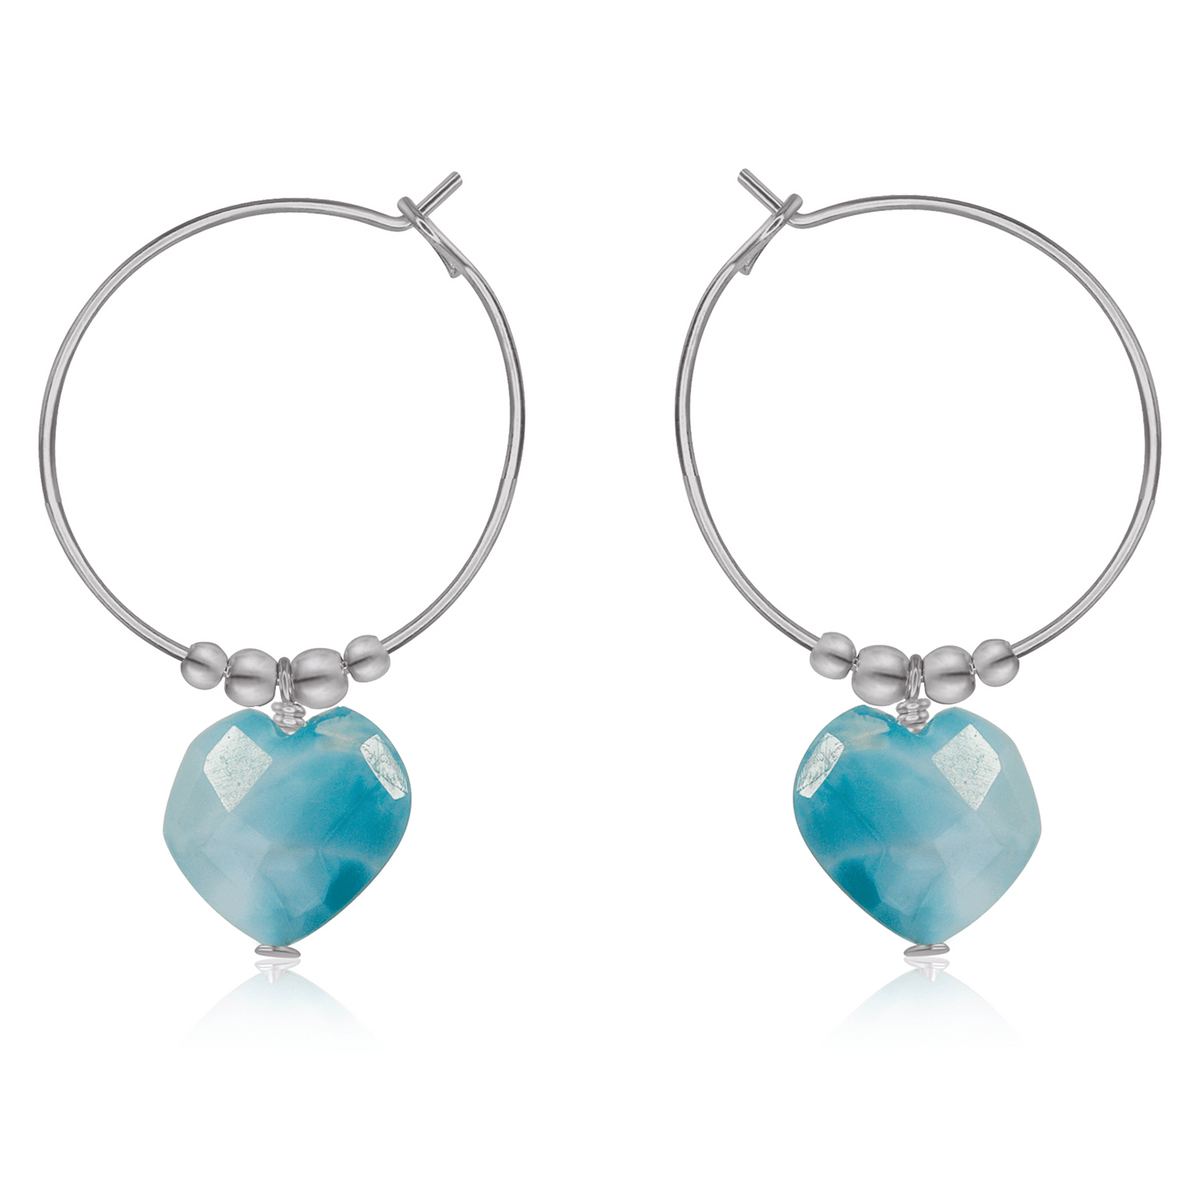 Larimar Crystal Heart Dangle Hoop Earrings - Larimar Crystal Heart Dangle Hoop Earrings - Stainless Steel - Luna Tide Handmade Crystal Jewellery